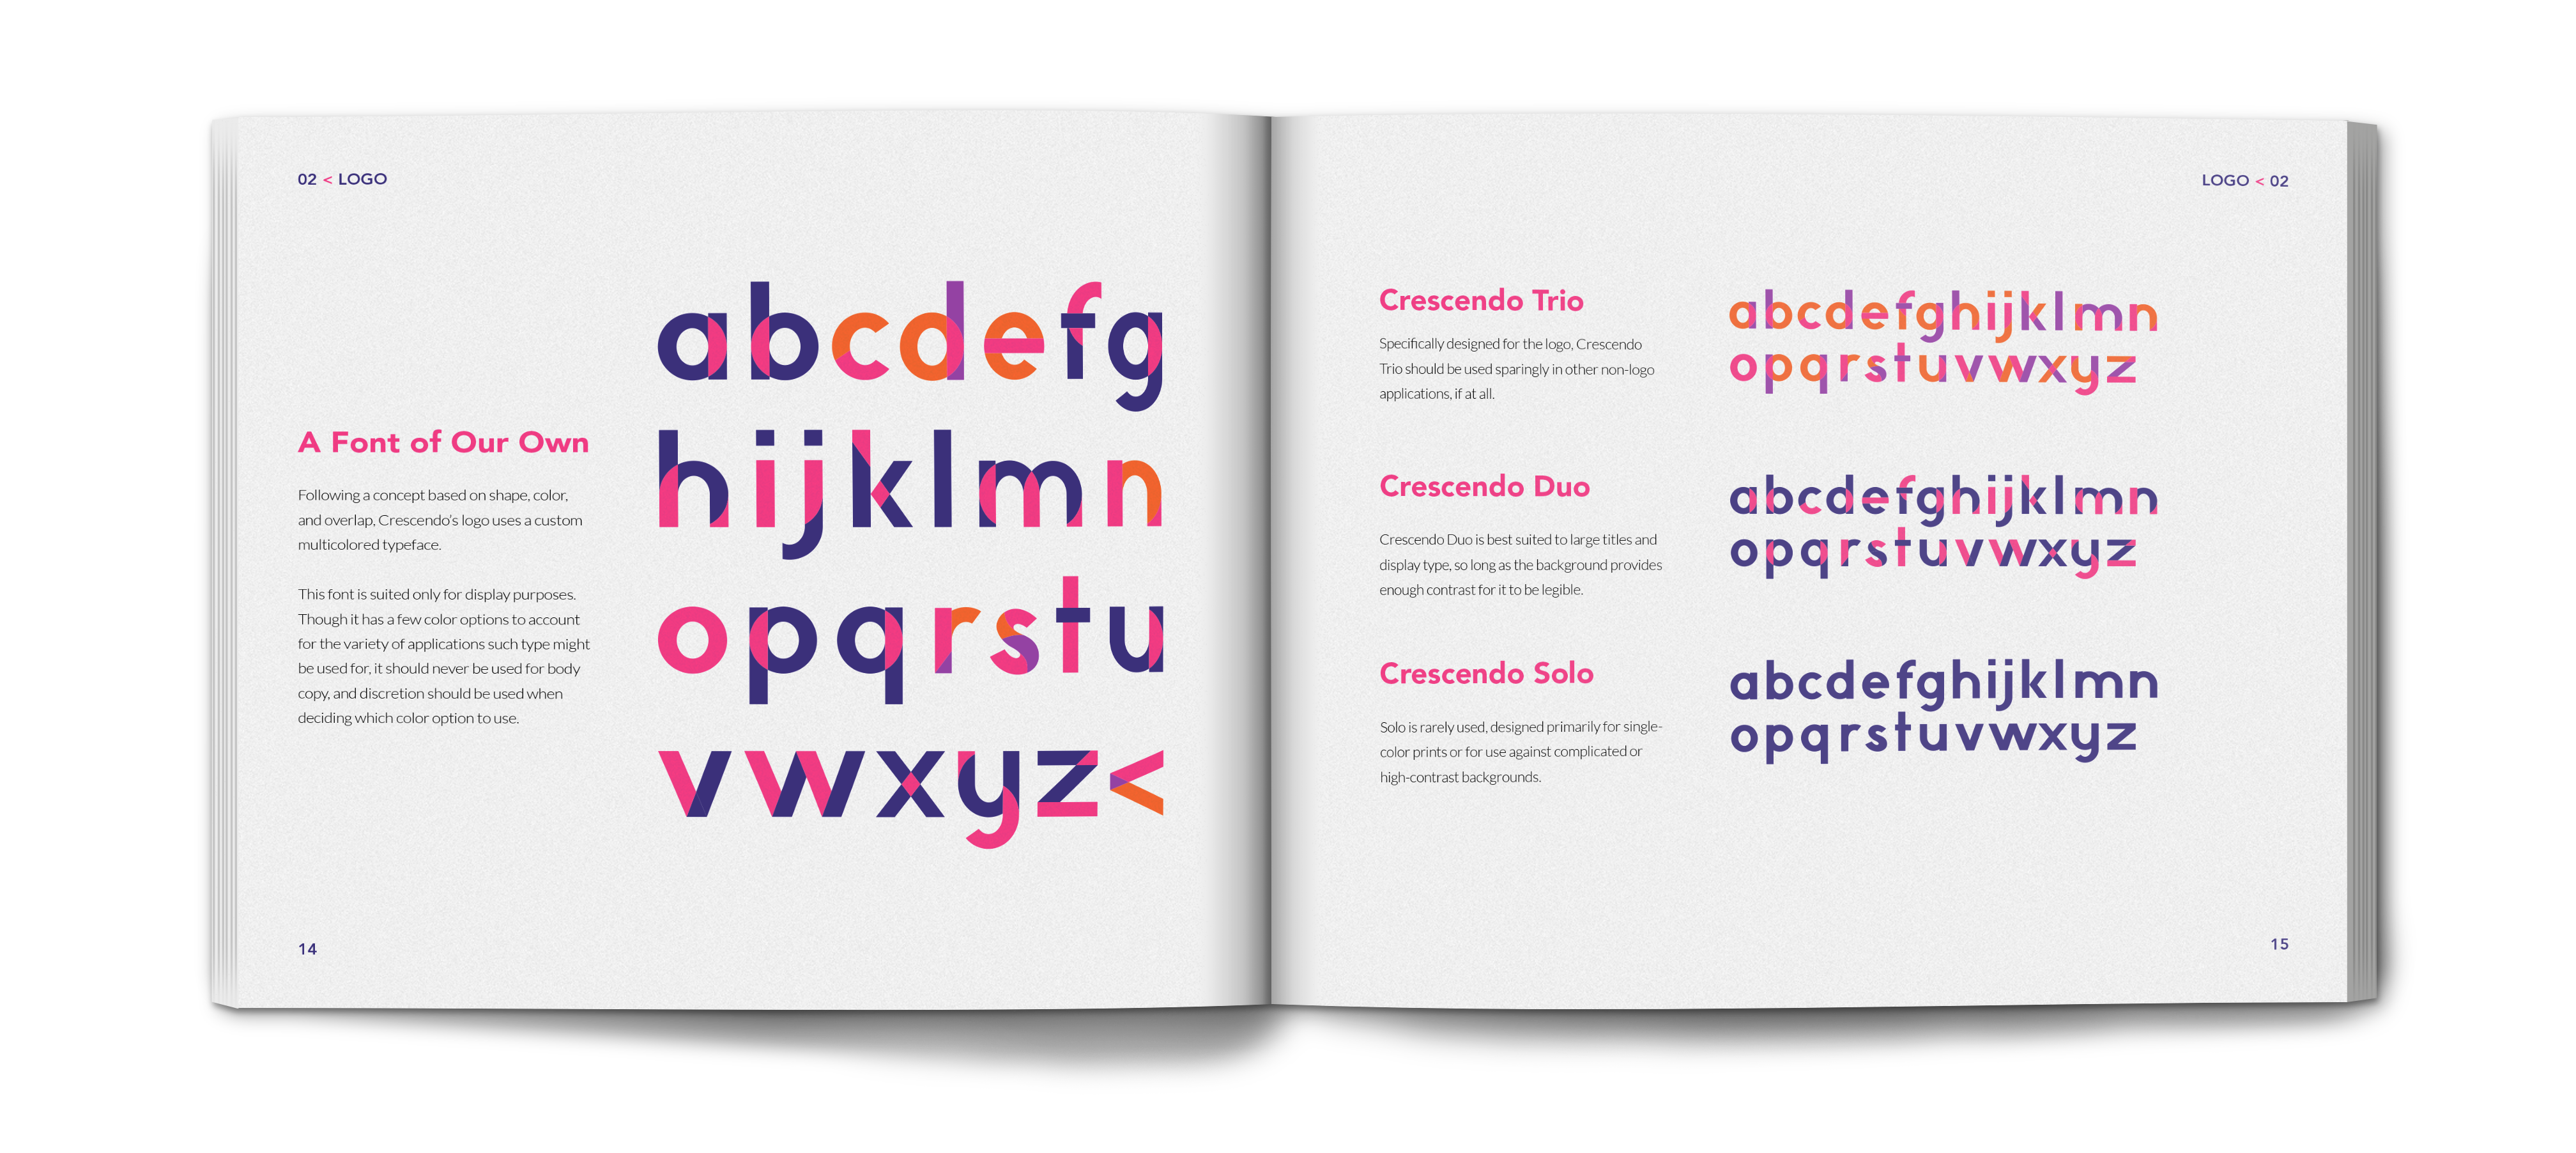 crescendo brand identity book showing the crescendo fonts